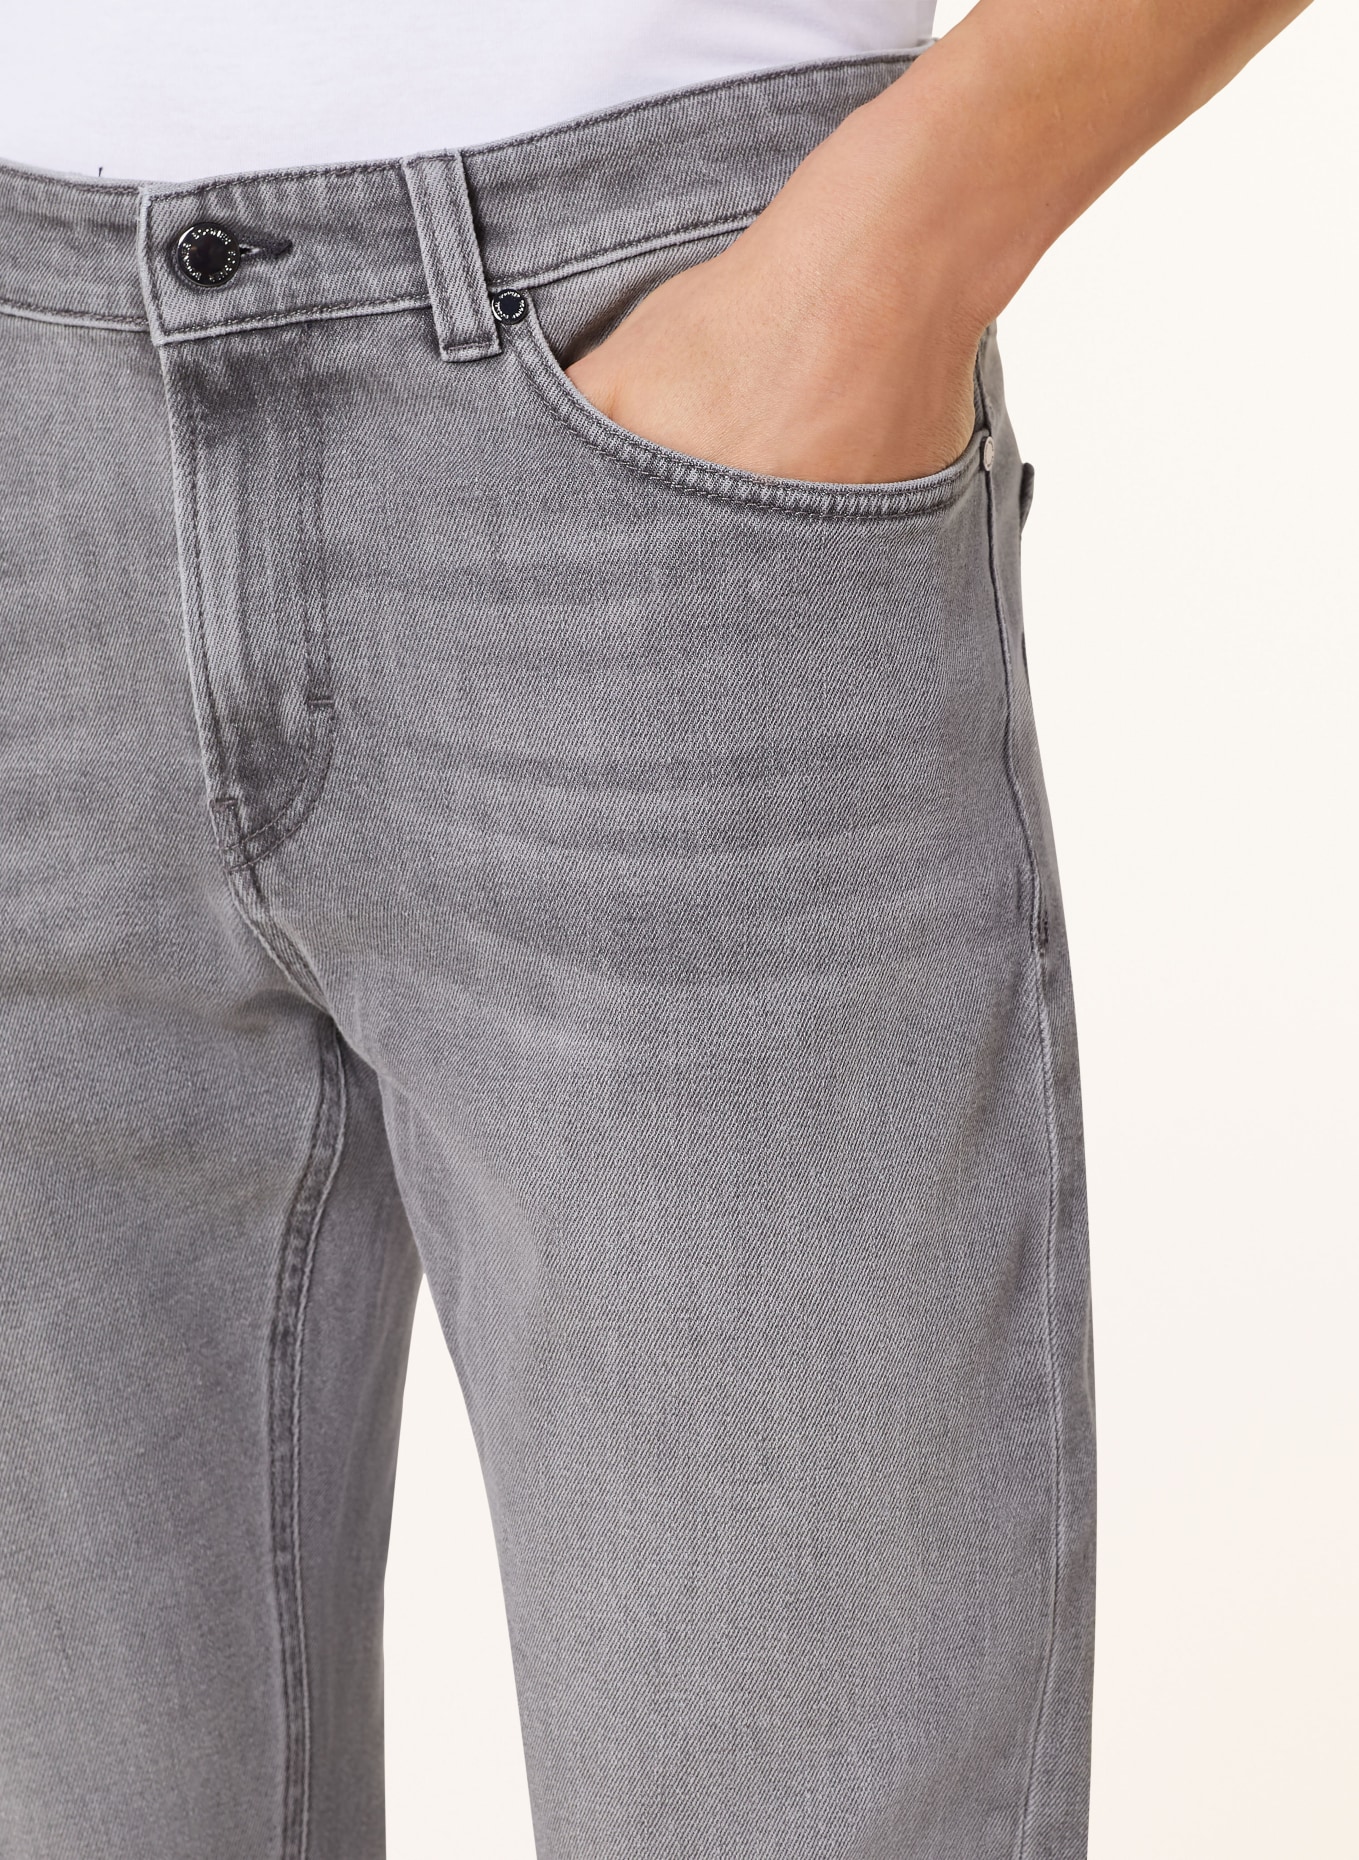 BOGNER Jeans ROB-G Prime Fit, Farbe: 021 anthra melange (Bild 5)